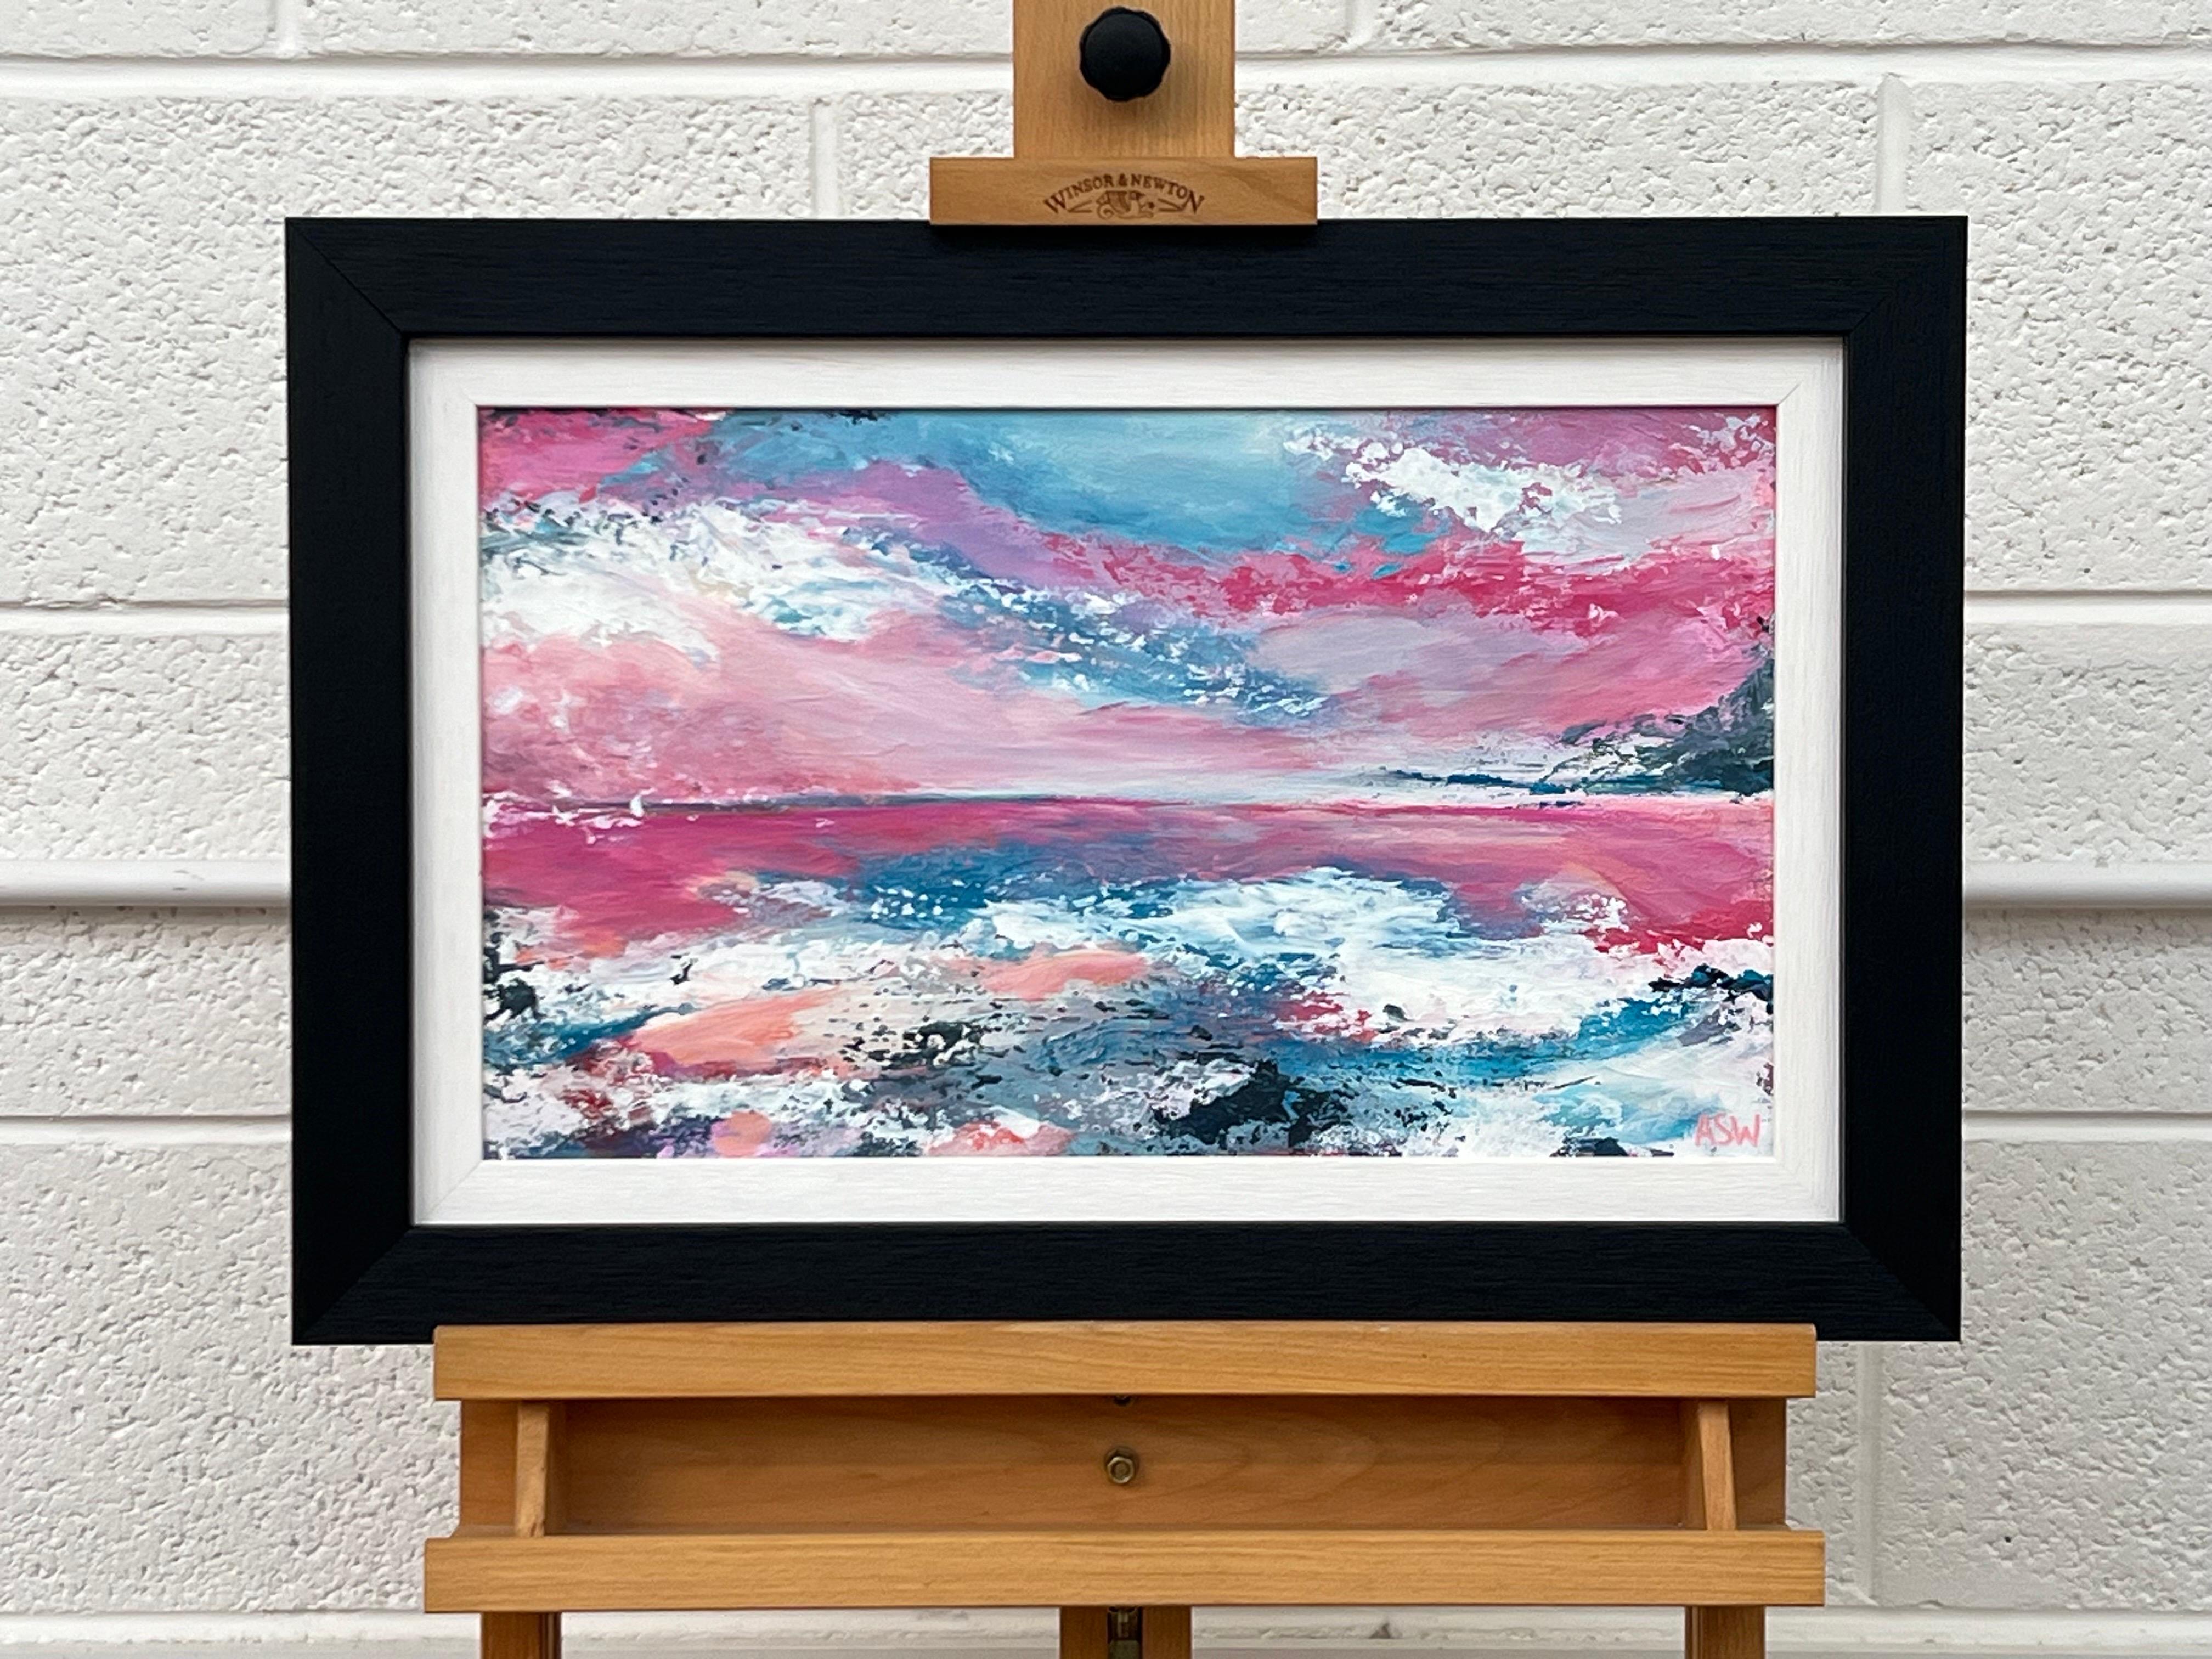 Abstrakte Landschaft, Meereslandschaft, Gemälde mit rosa und blauem Himmel des britischen Künstlers (Abstrakter Impressionismus), Painting, von Angela Wakefield